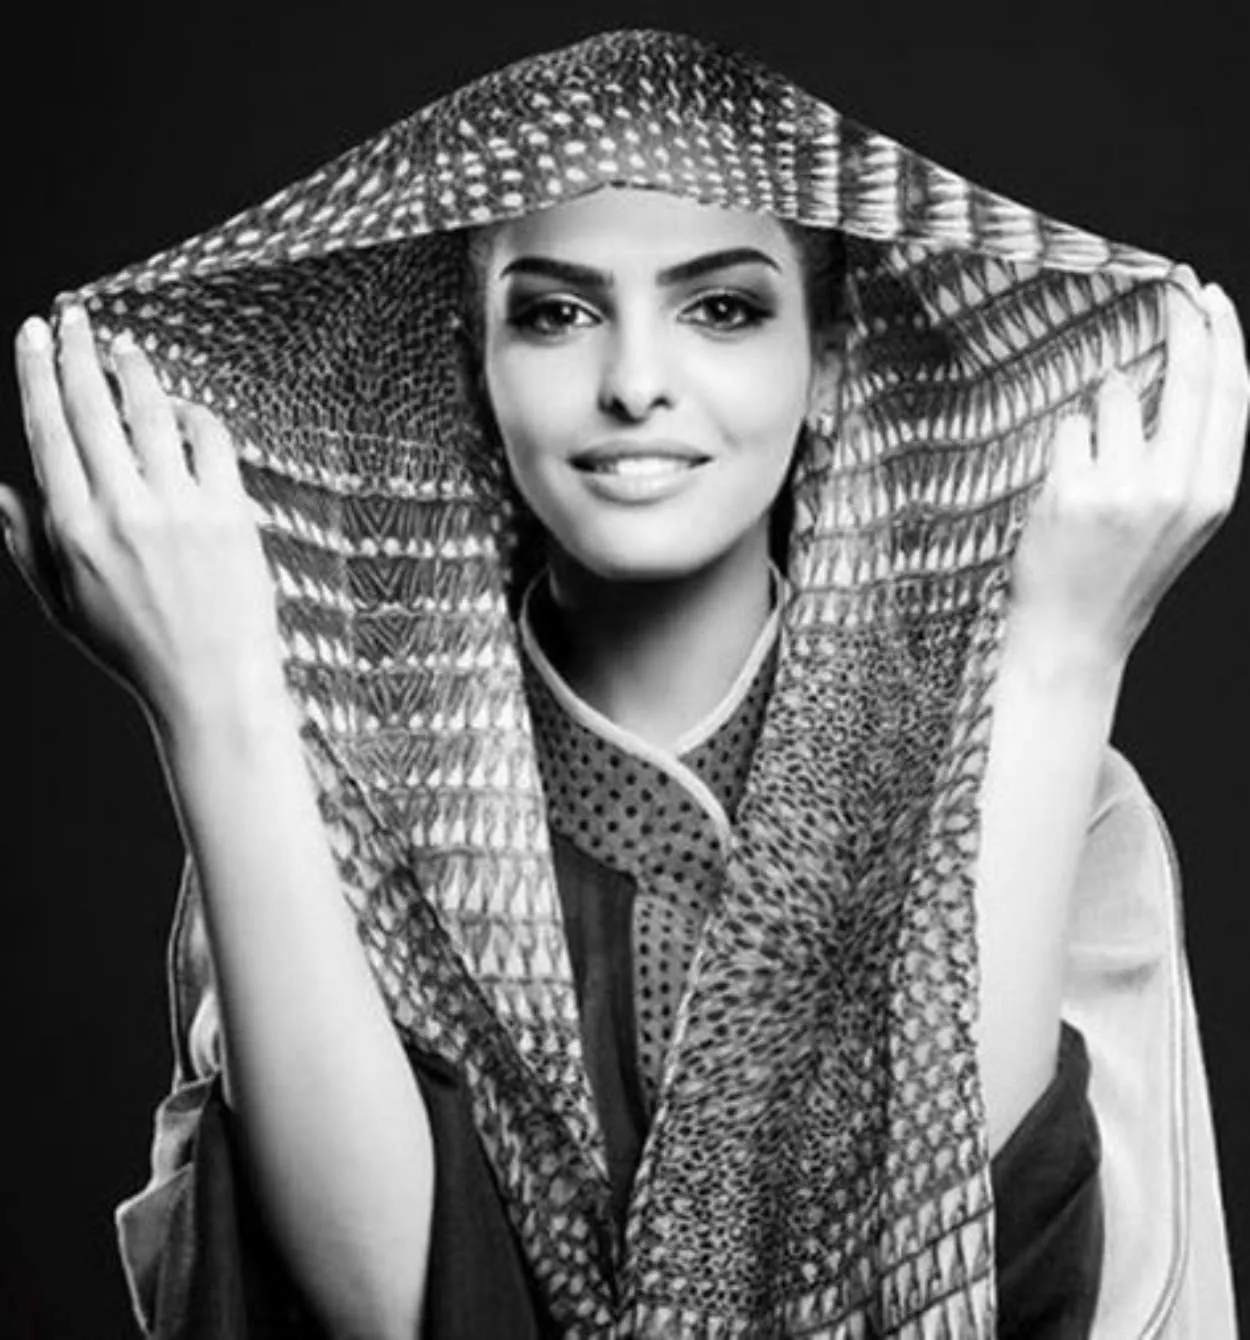 Medina (Arab Saudi) beautiful woman or selebgram